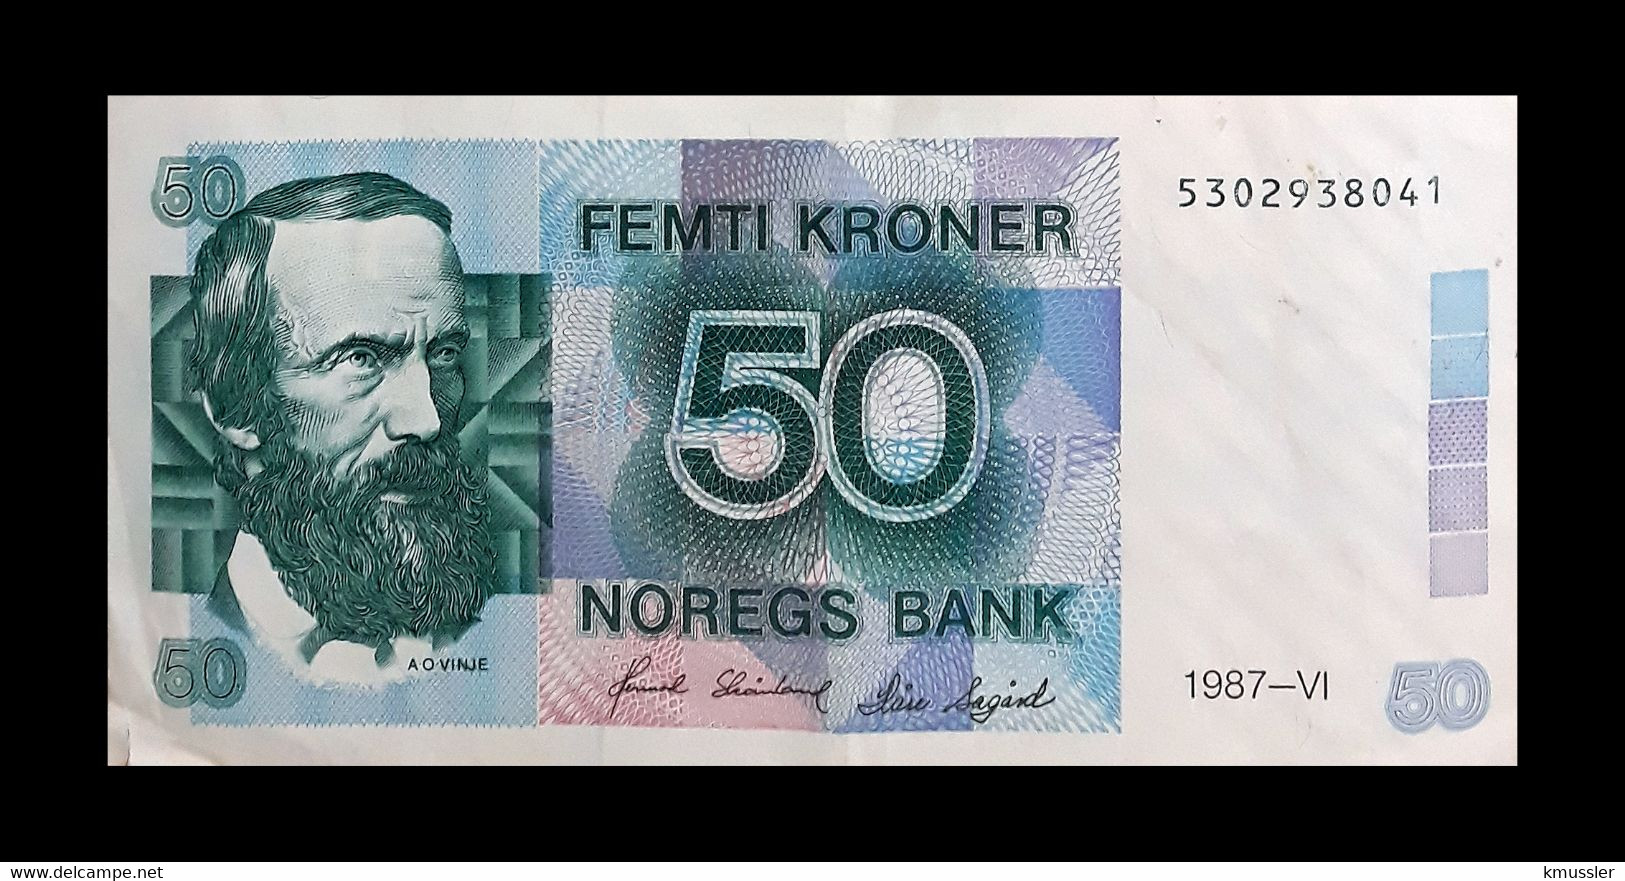 # # # Banknote Norwegen (Norway) 50 Kroner 1986 UNC # # # - Norway